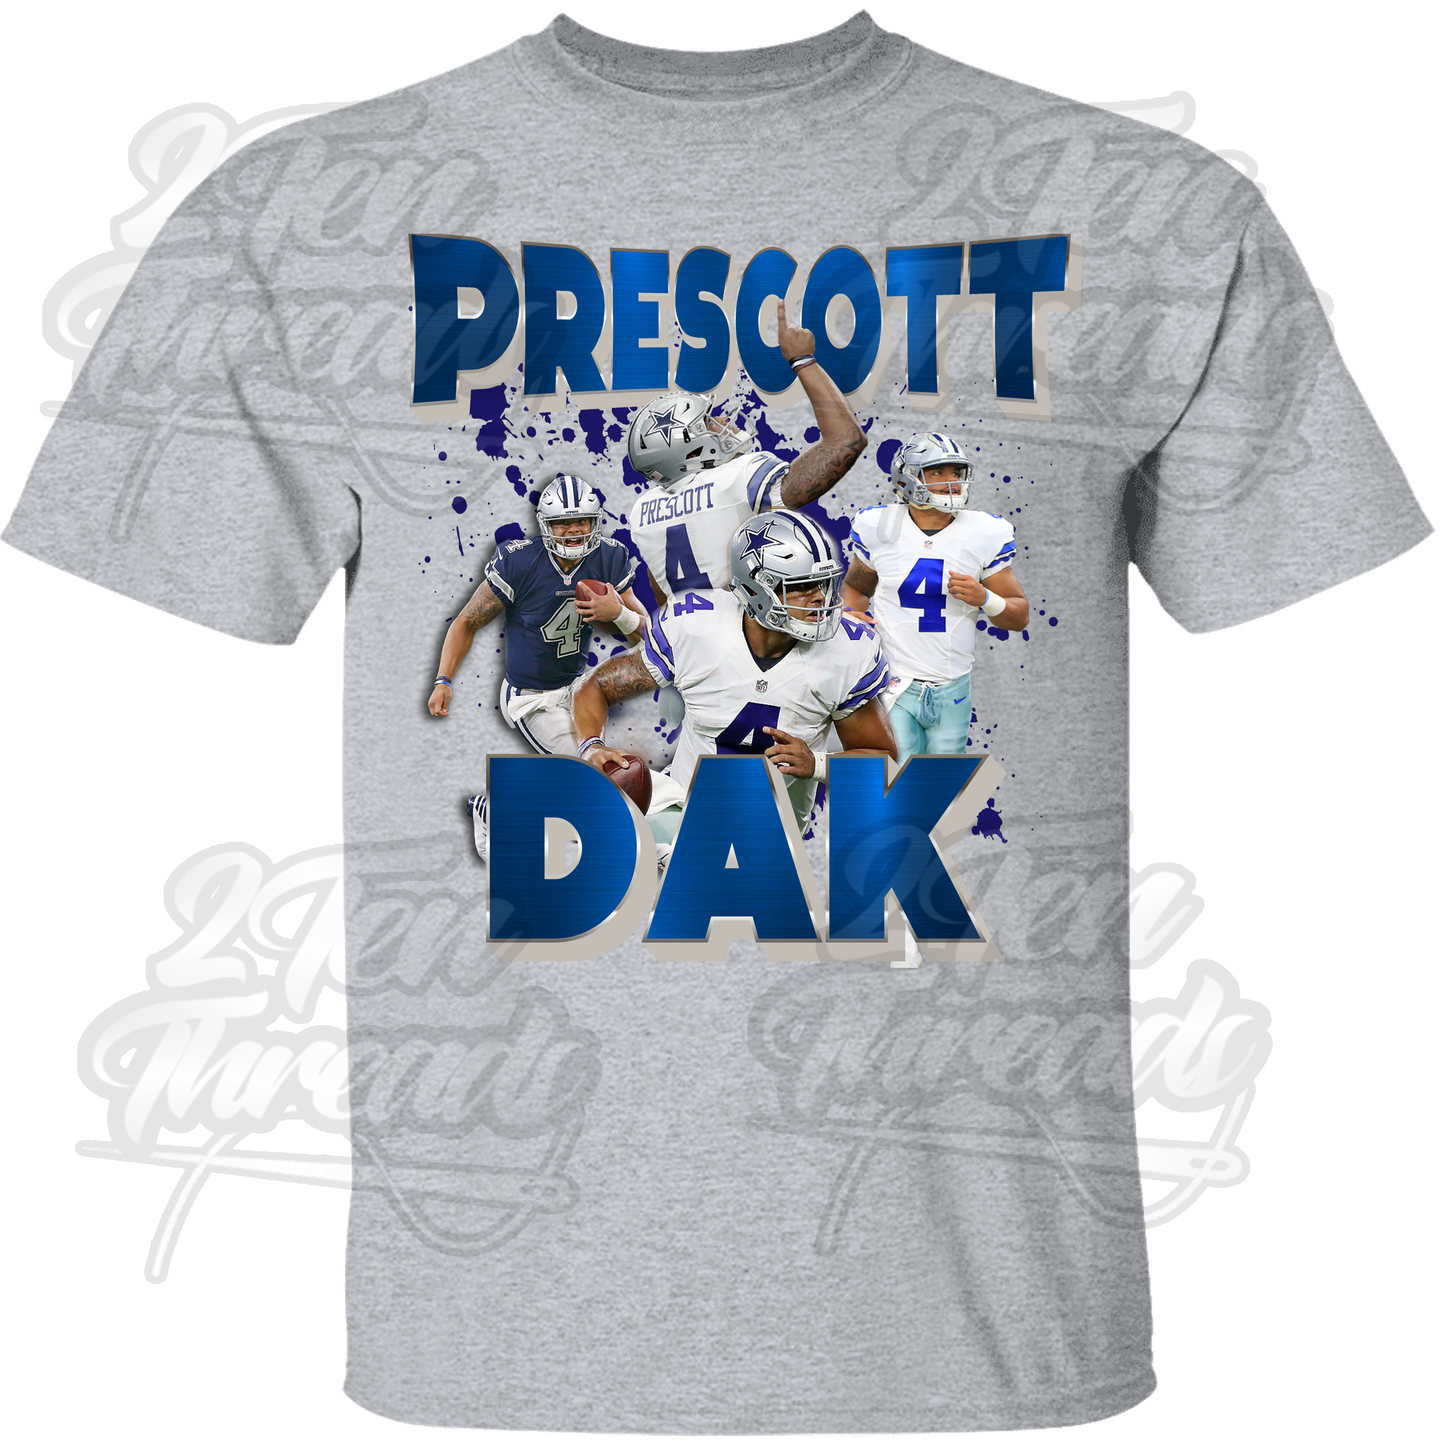 Dak Prescott T-Shirt